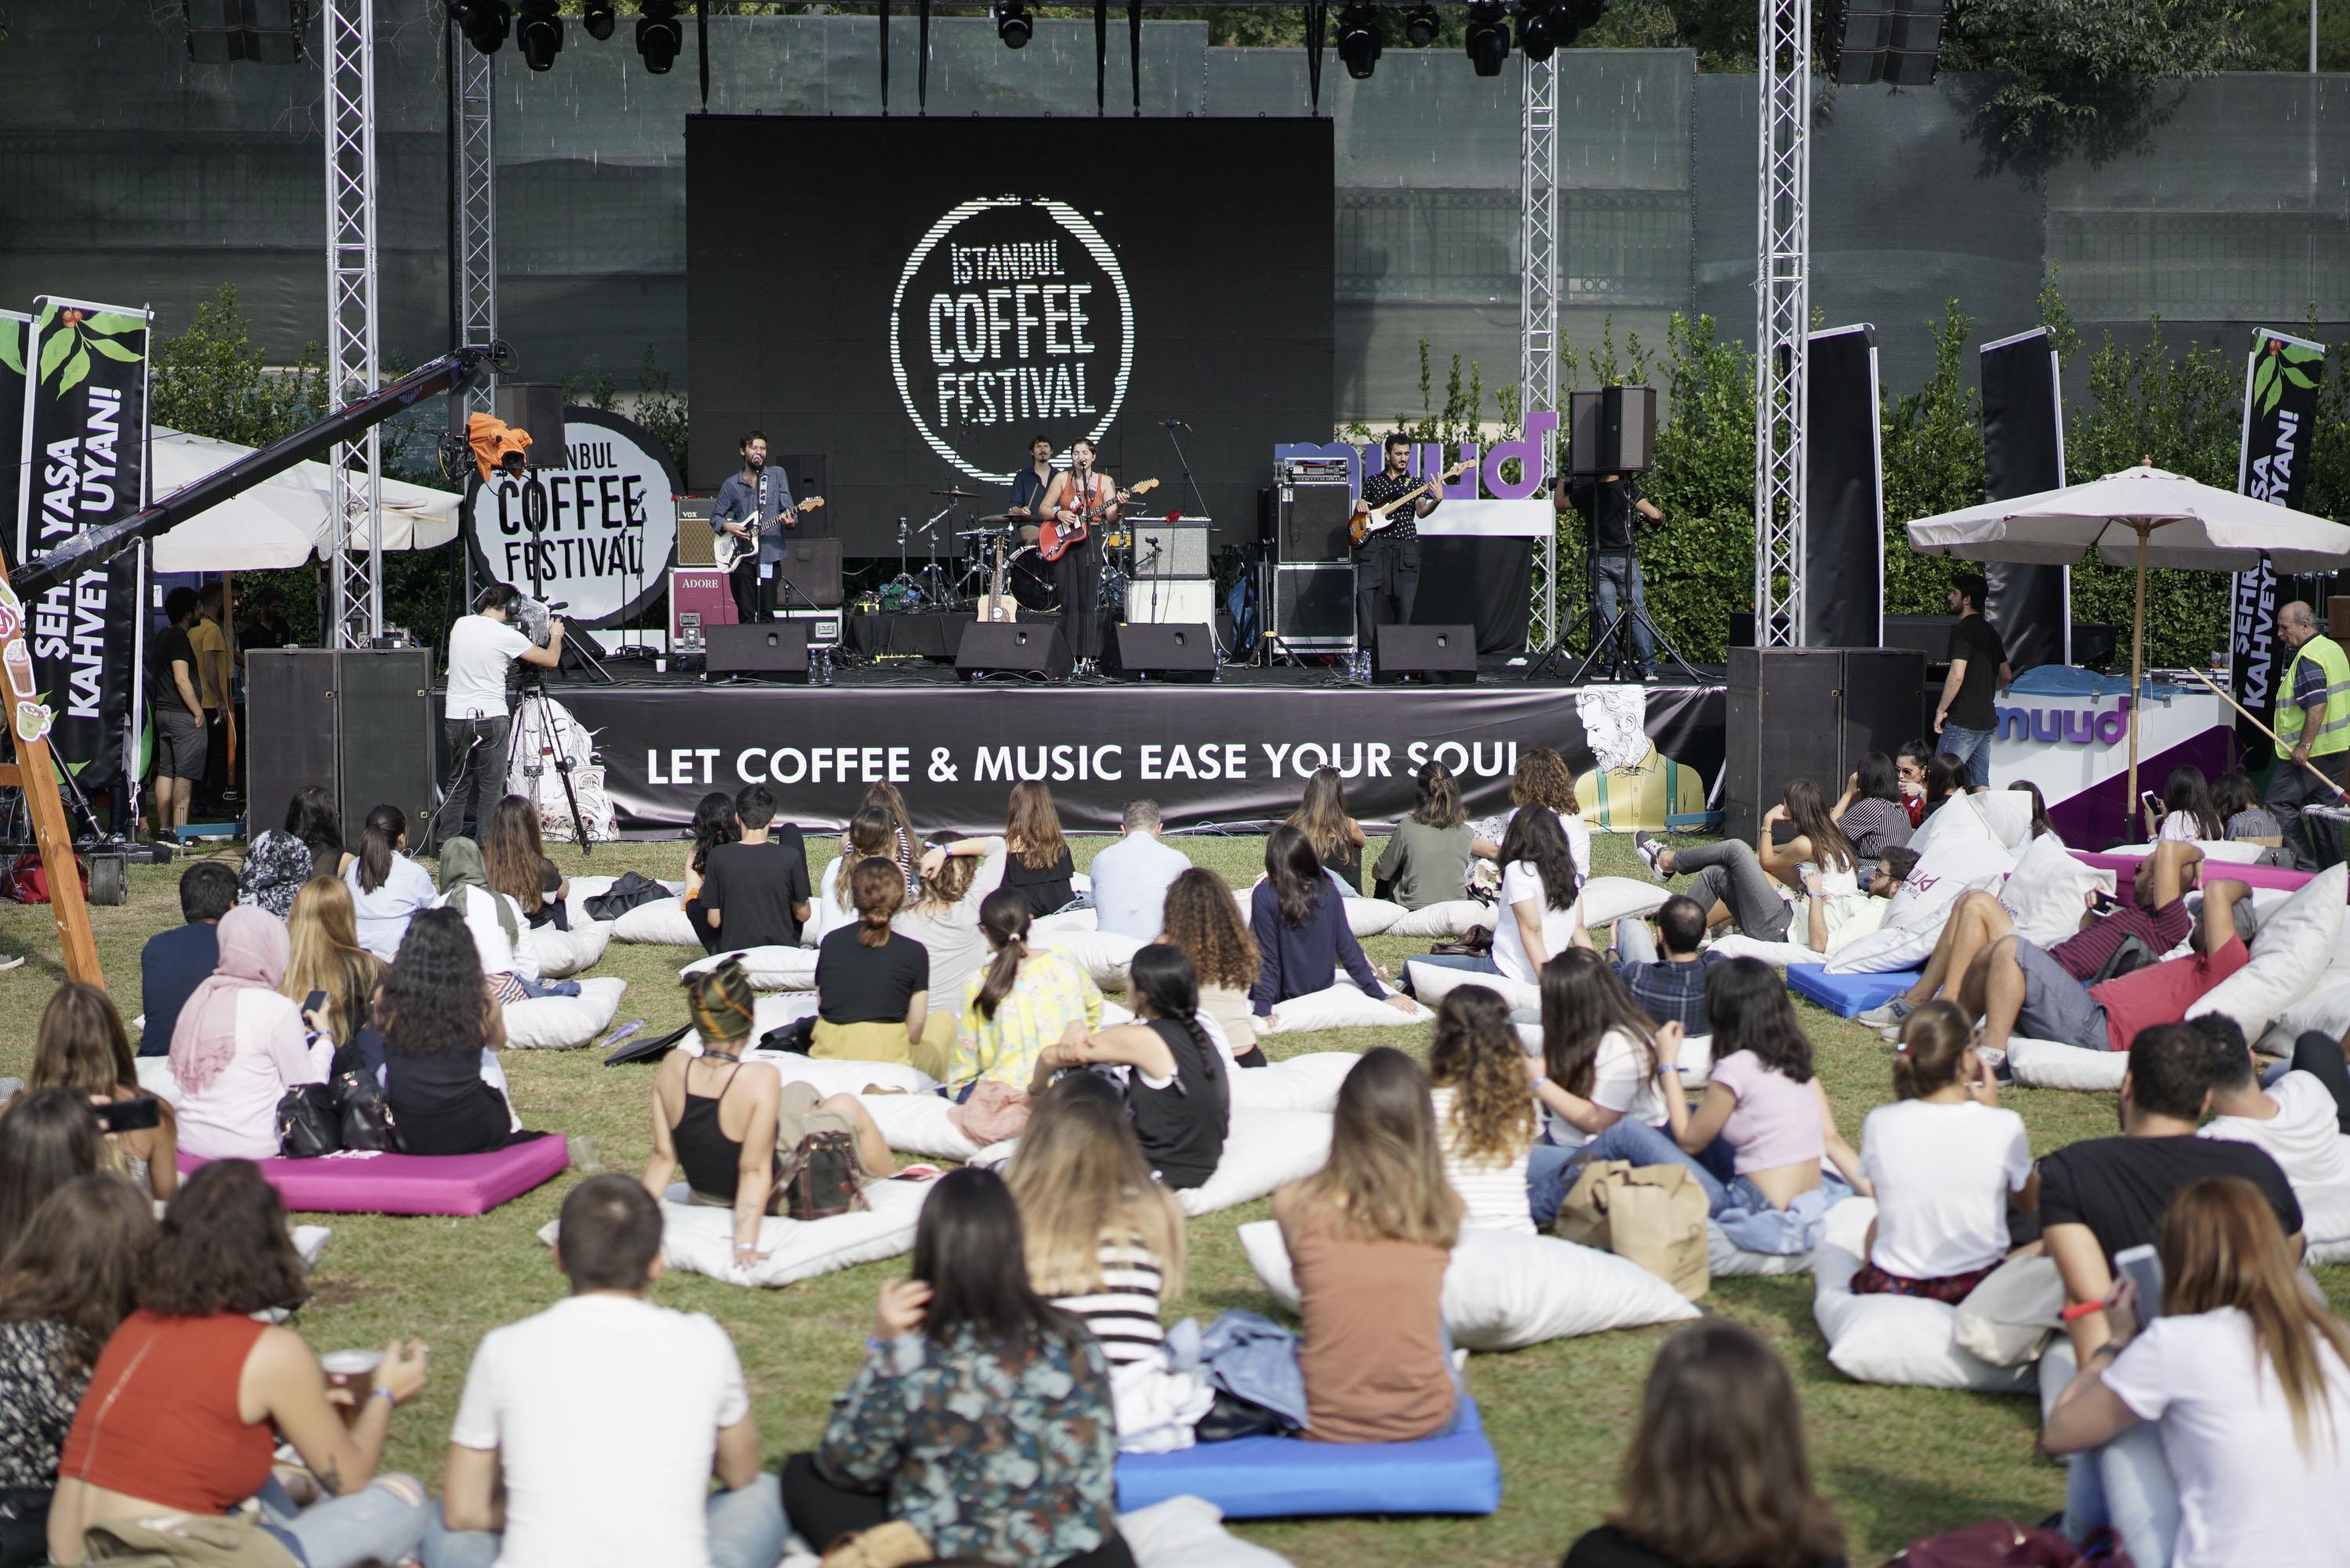 İstanbul Coffee Festival beşinci yılında onbinlerce kahveseveri ağırlayacak